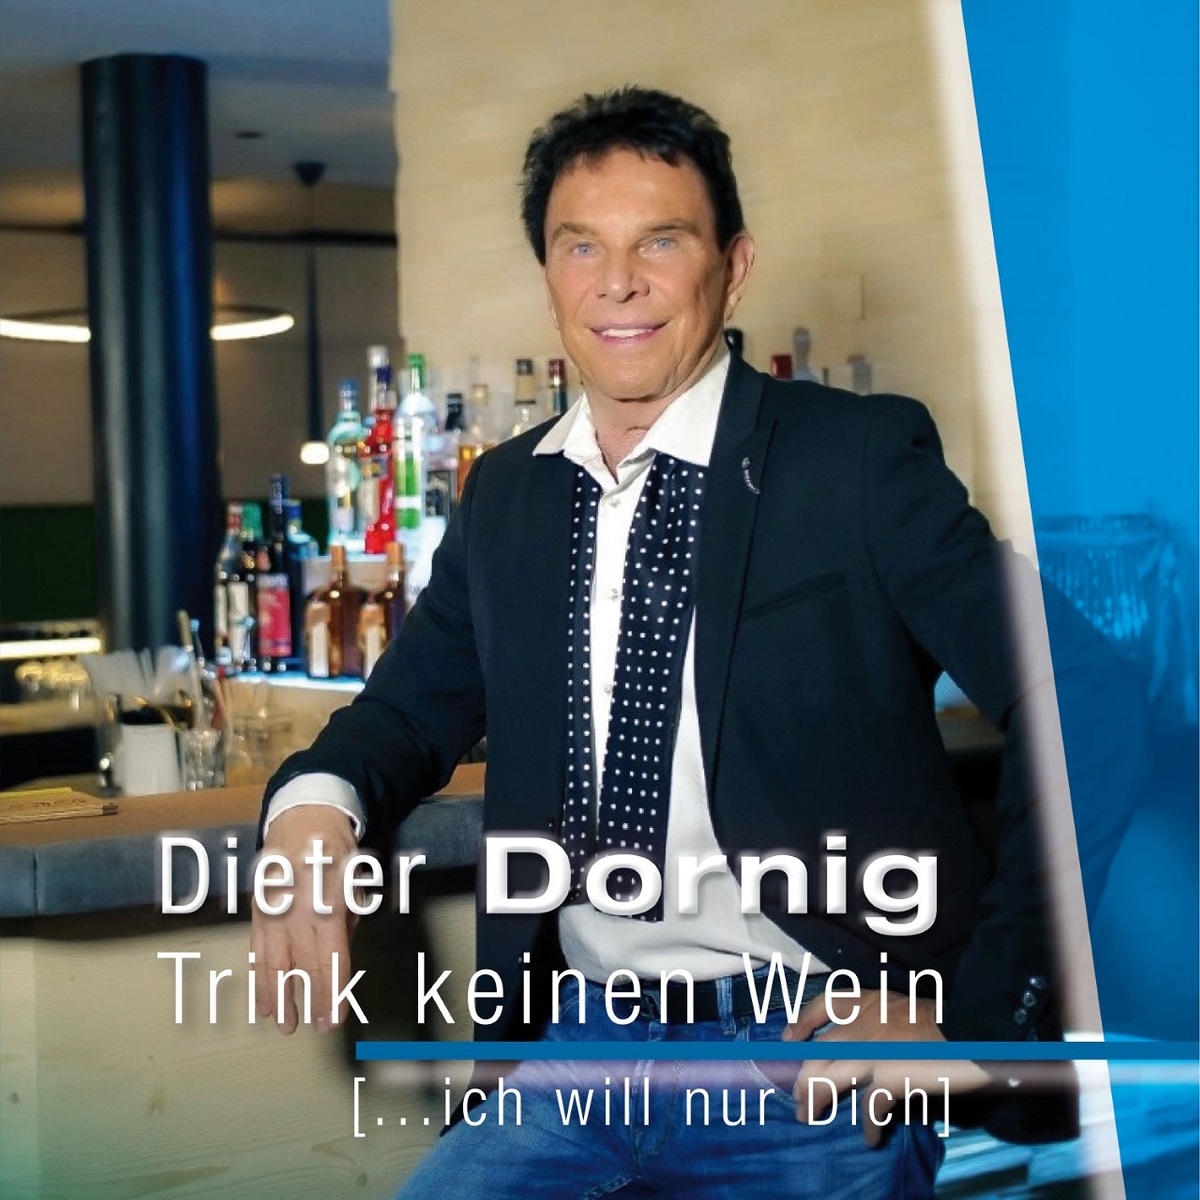 Dieter Dornig - Trink keinen Wein Cover klein.jpg